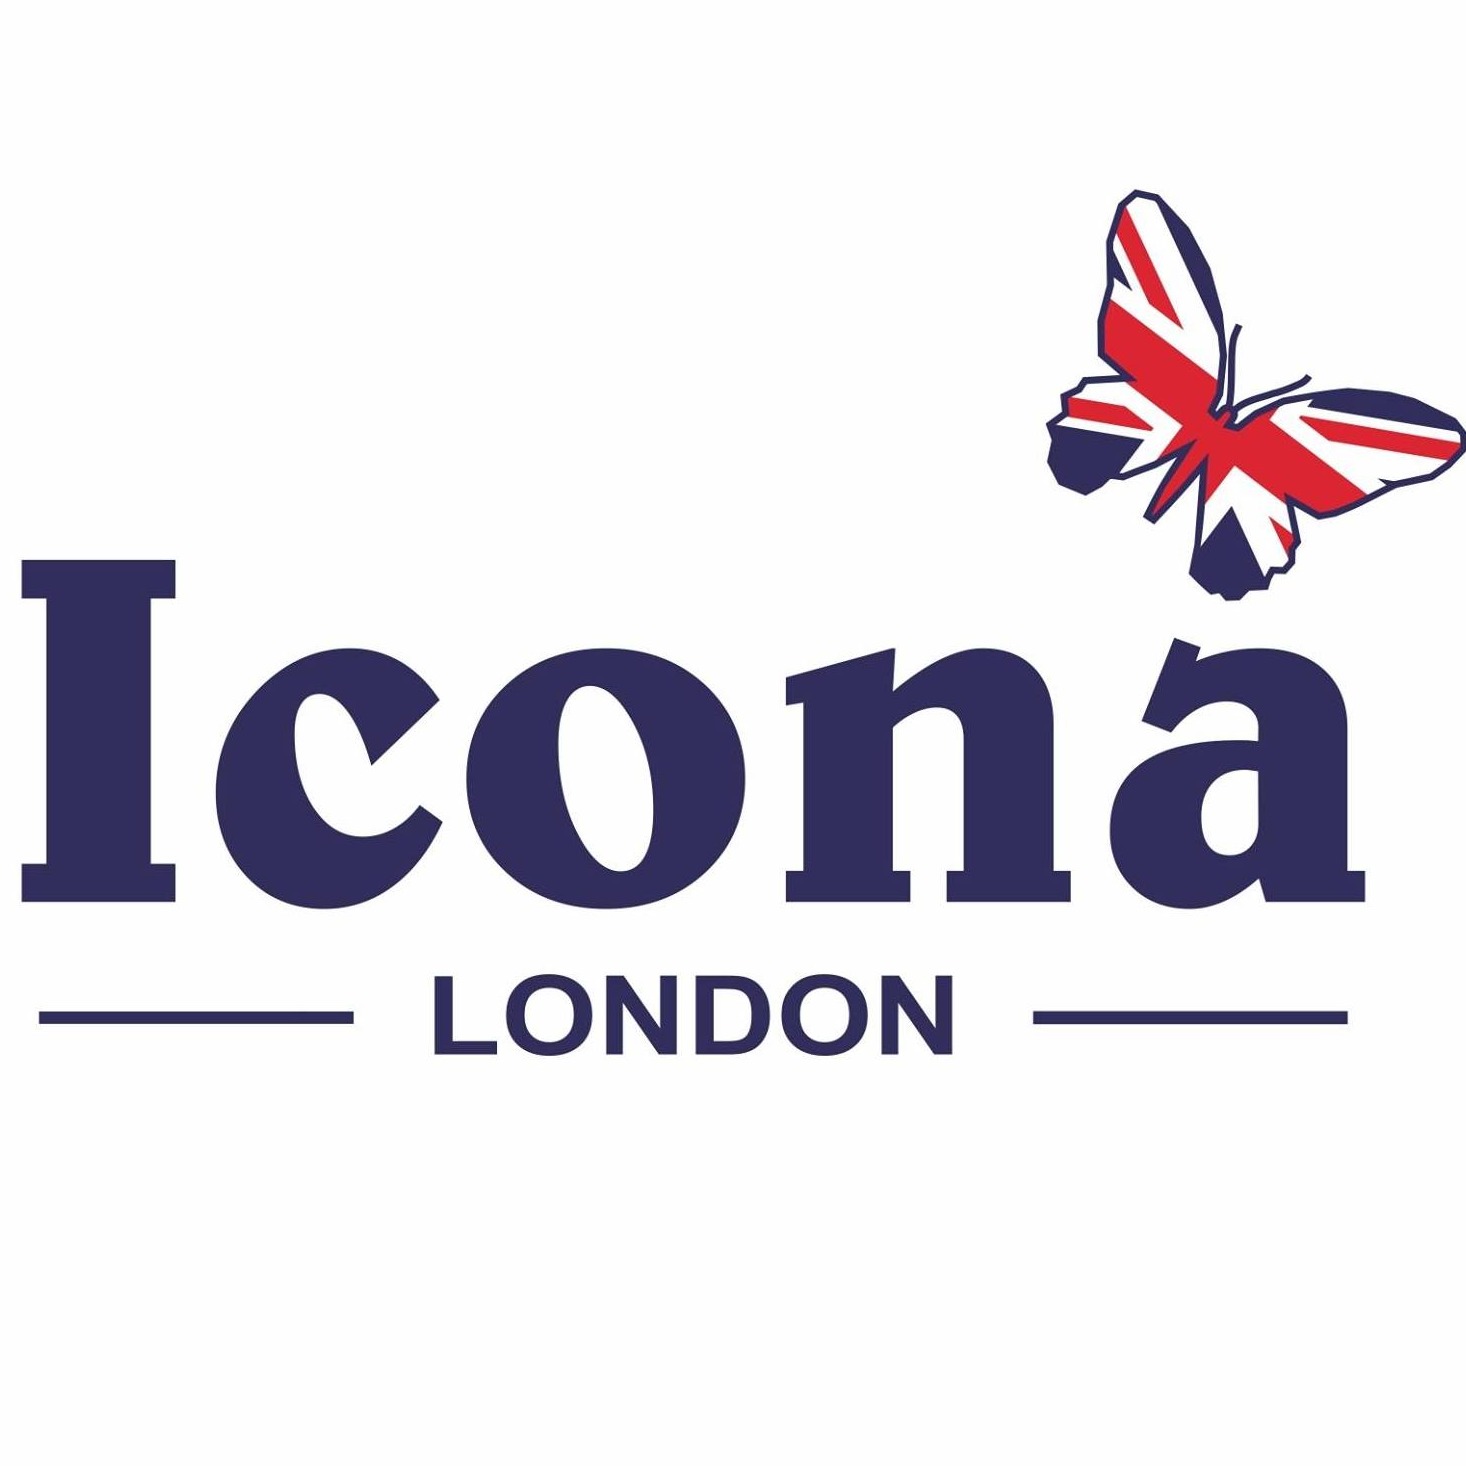 Icona